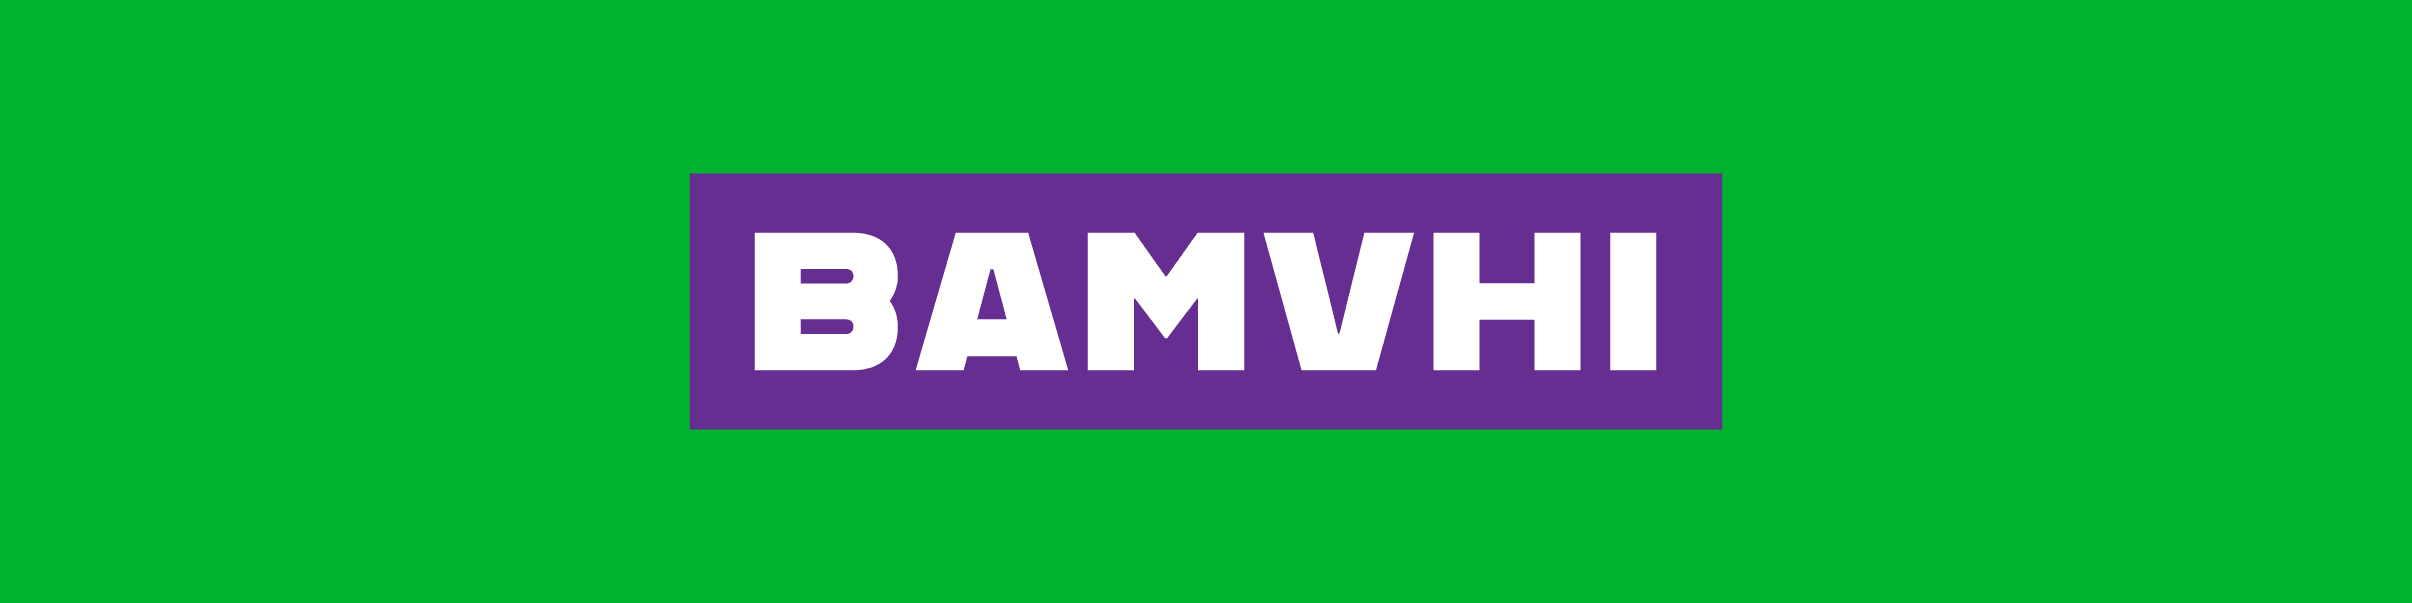 BAMVHI banner